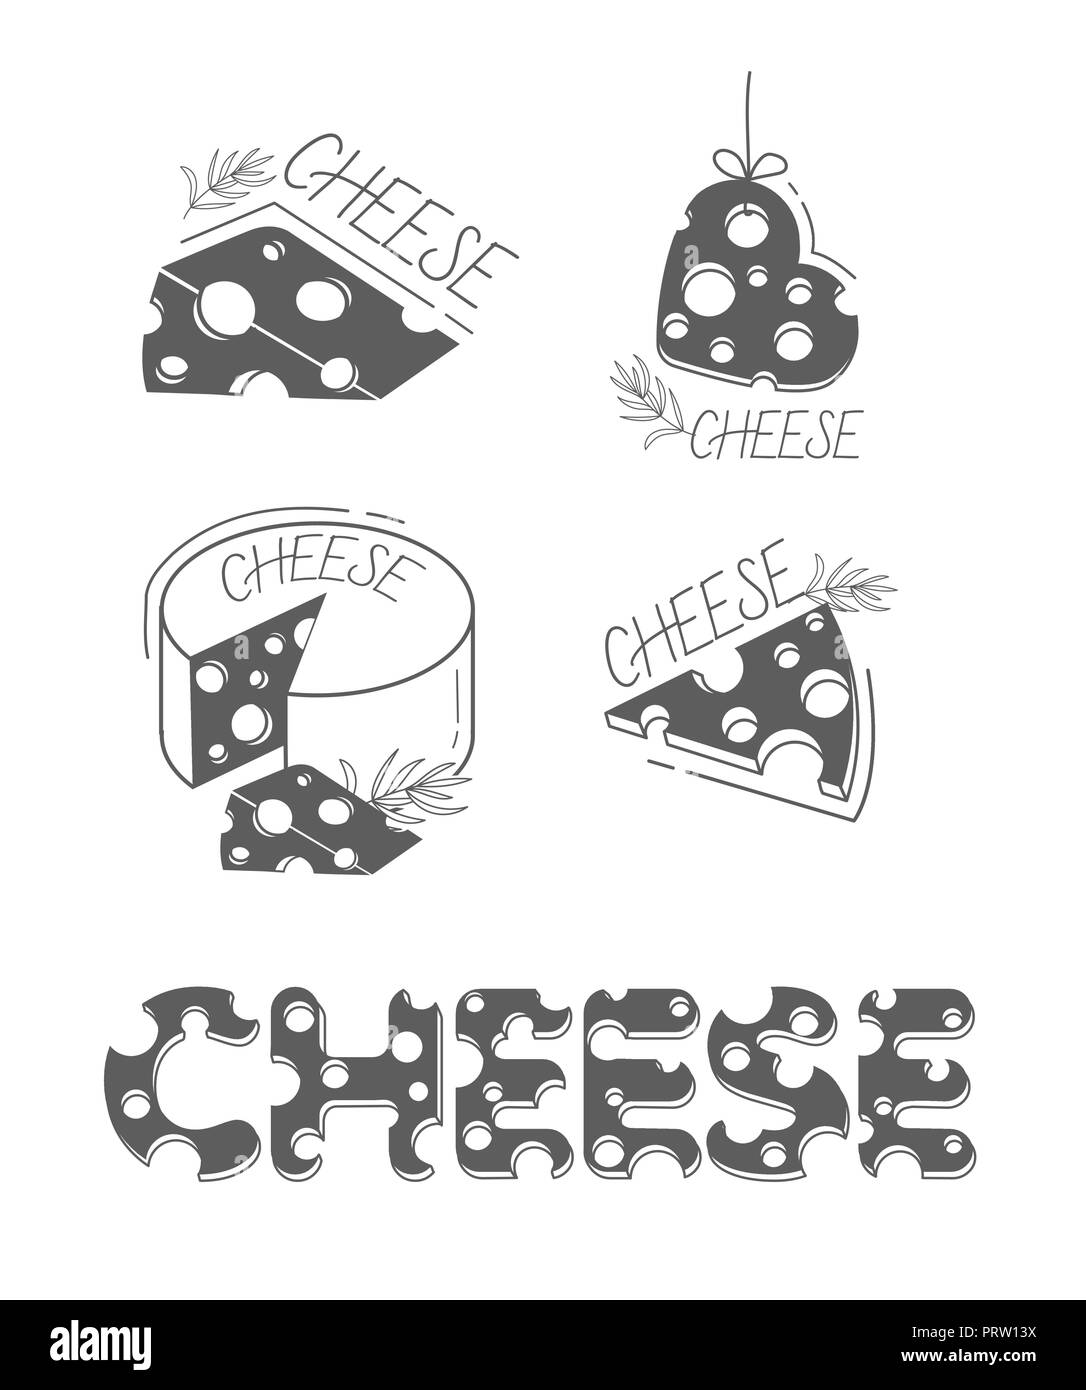 Scheiben Käse und die Inschrift von Käse in einer flachen Stil. Satz von Käse Icons, Silhouette. schwarz-weiß illustration Stock Vektor